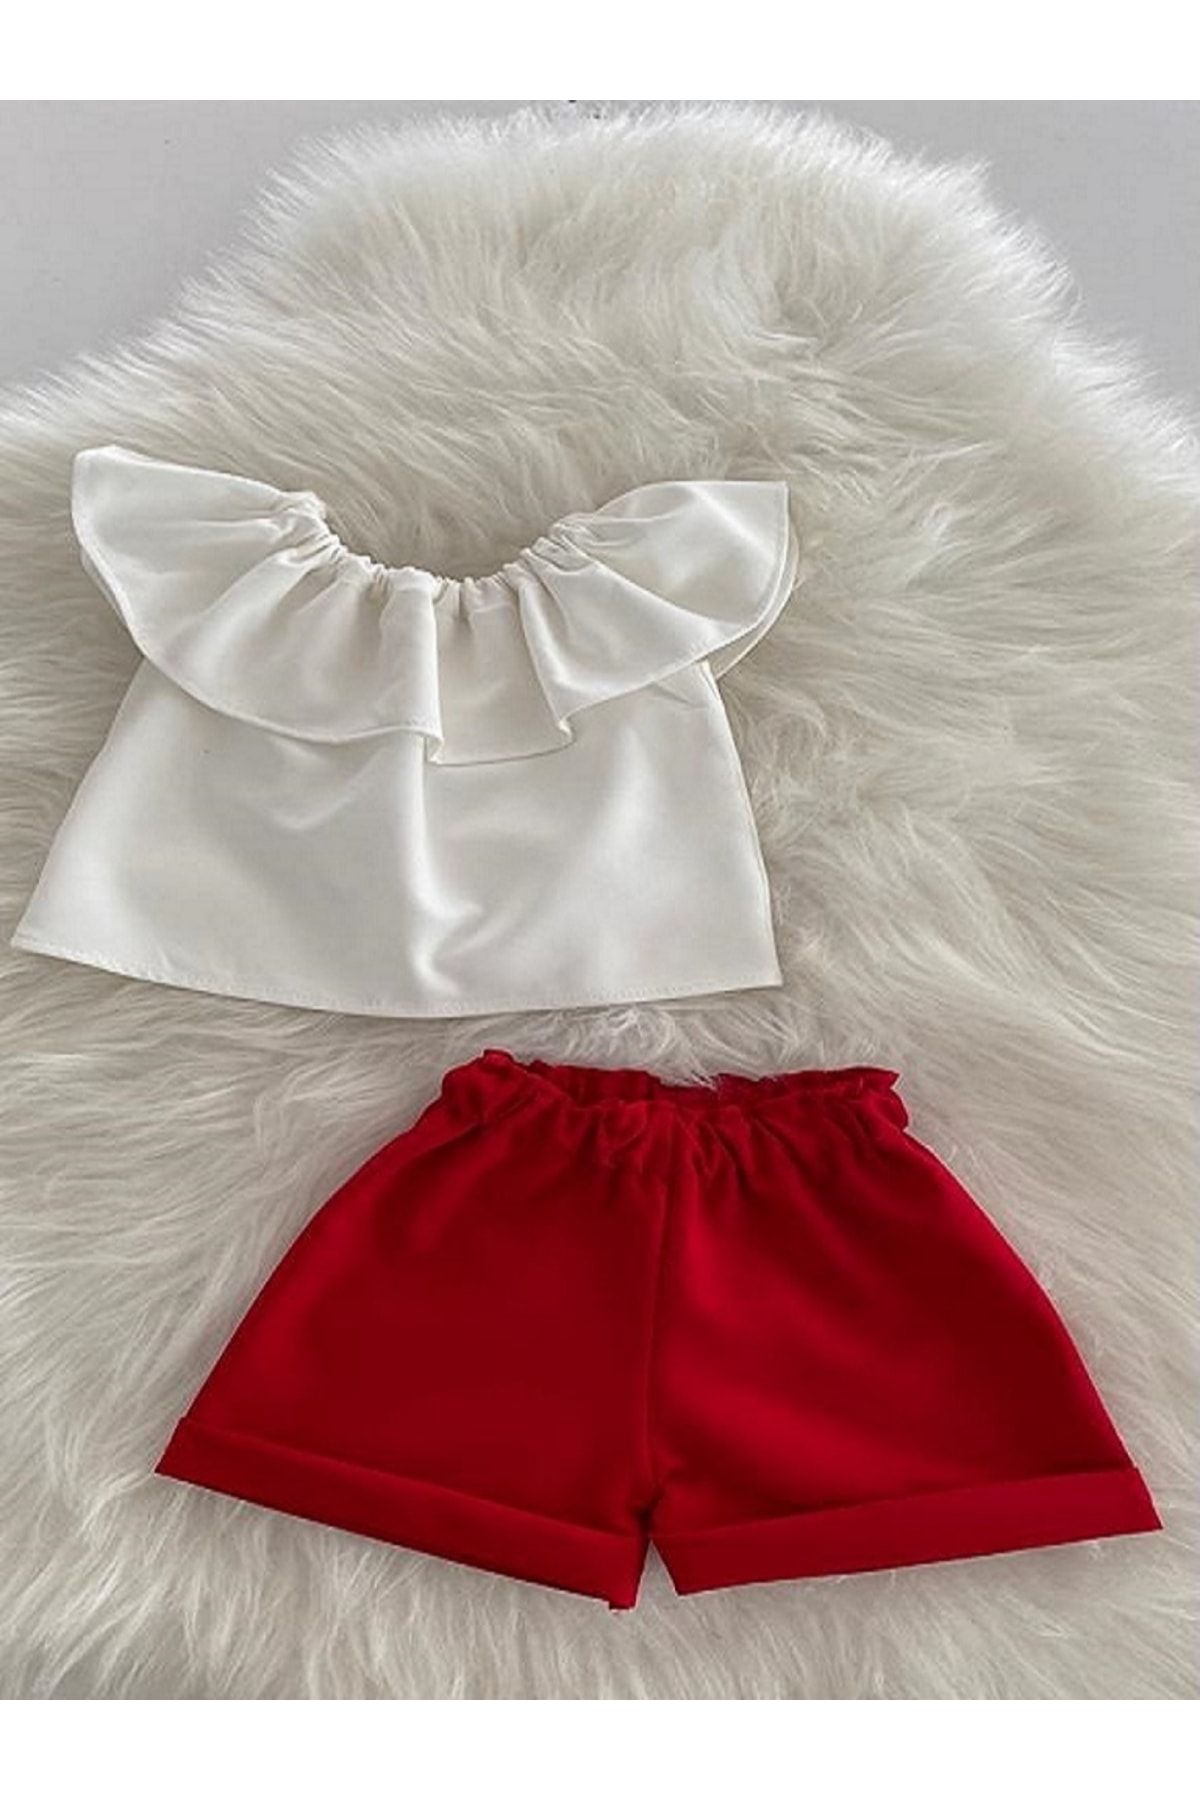 Moda Lina Kız Bebek Beyaz Bluz & Kırmızı Şort Takım